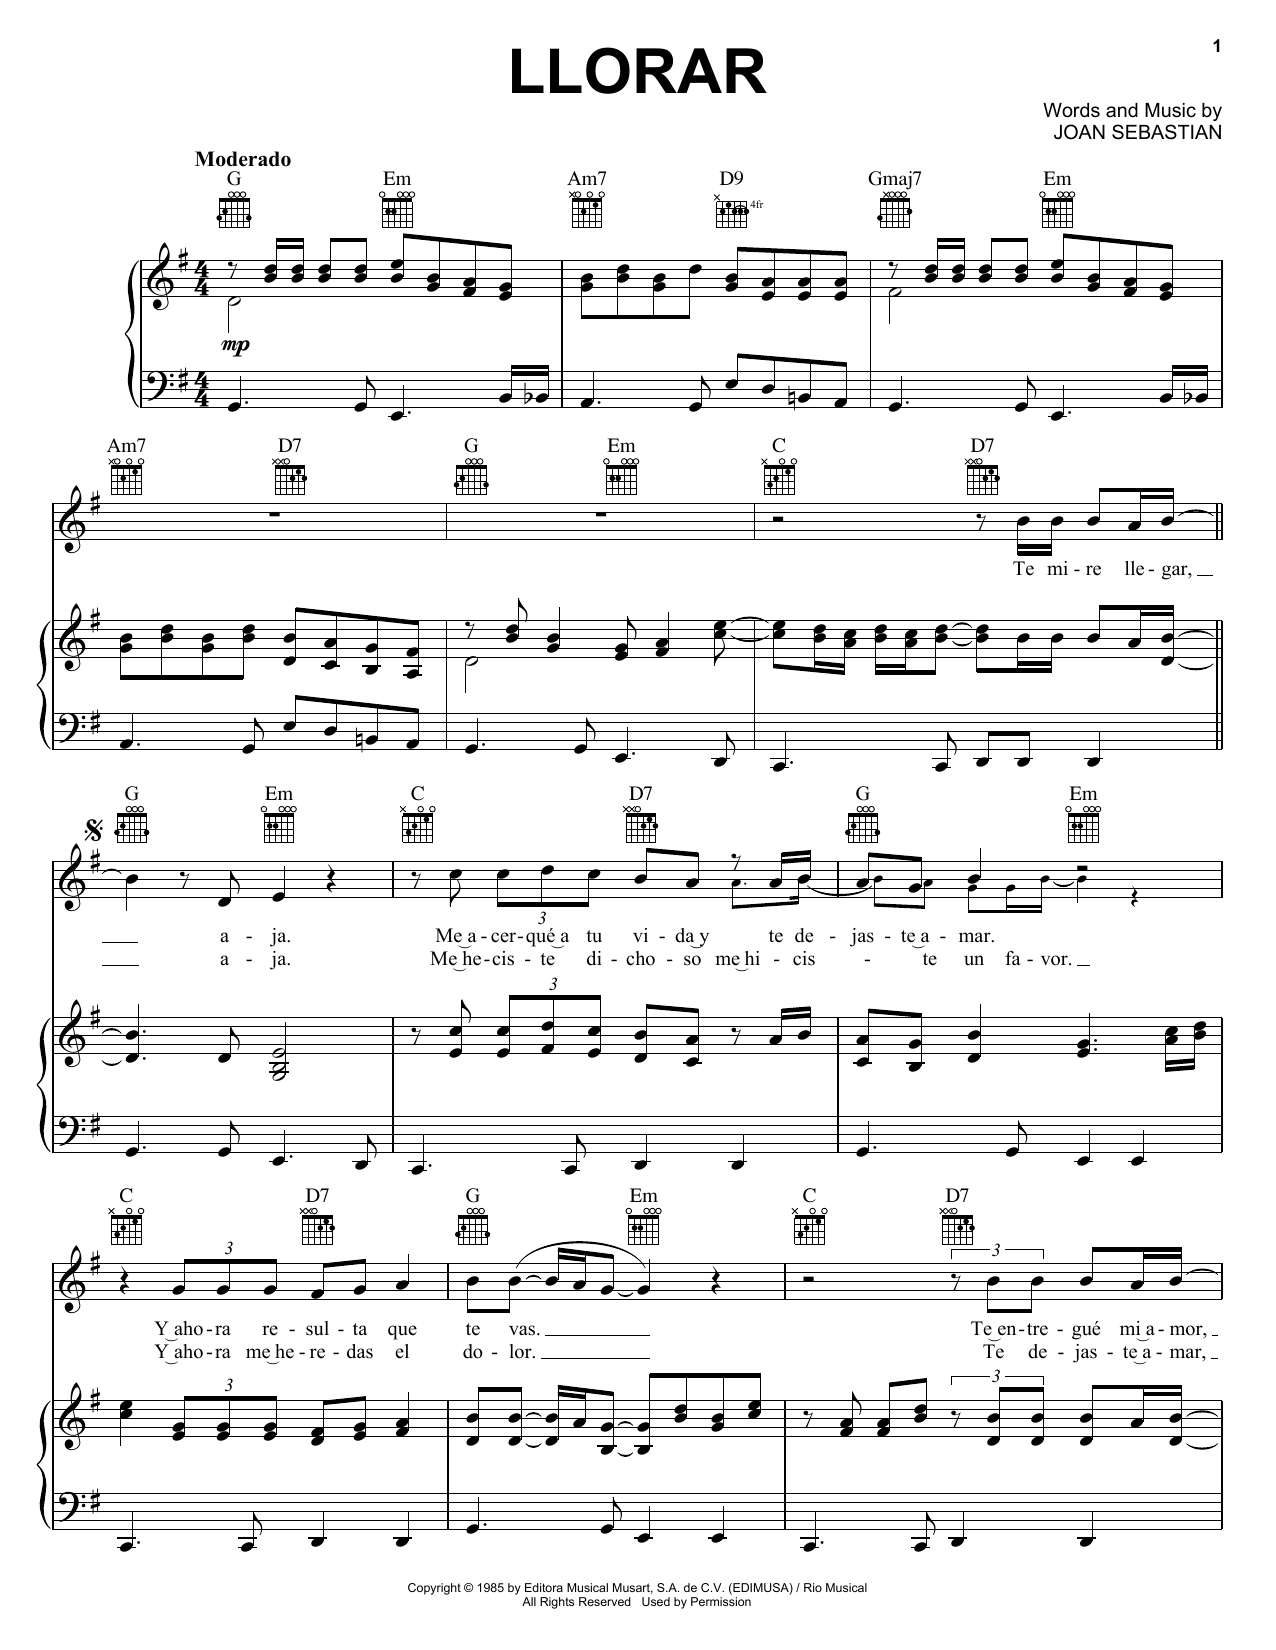 Joan Sebastian Llorar Sheet Music Notes & Chords for Piano, Vocal & Guitar (Right-Hand Melody) - Download or Print PDF